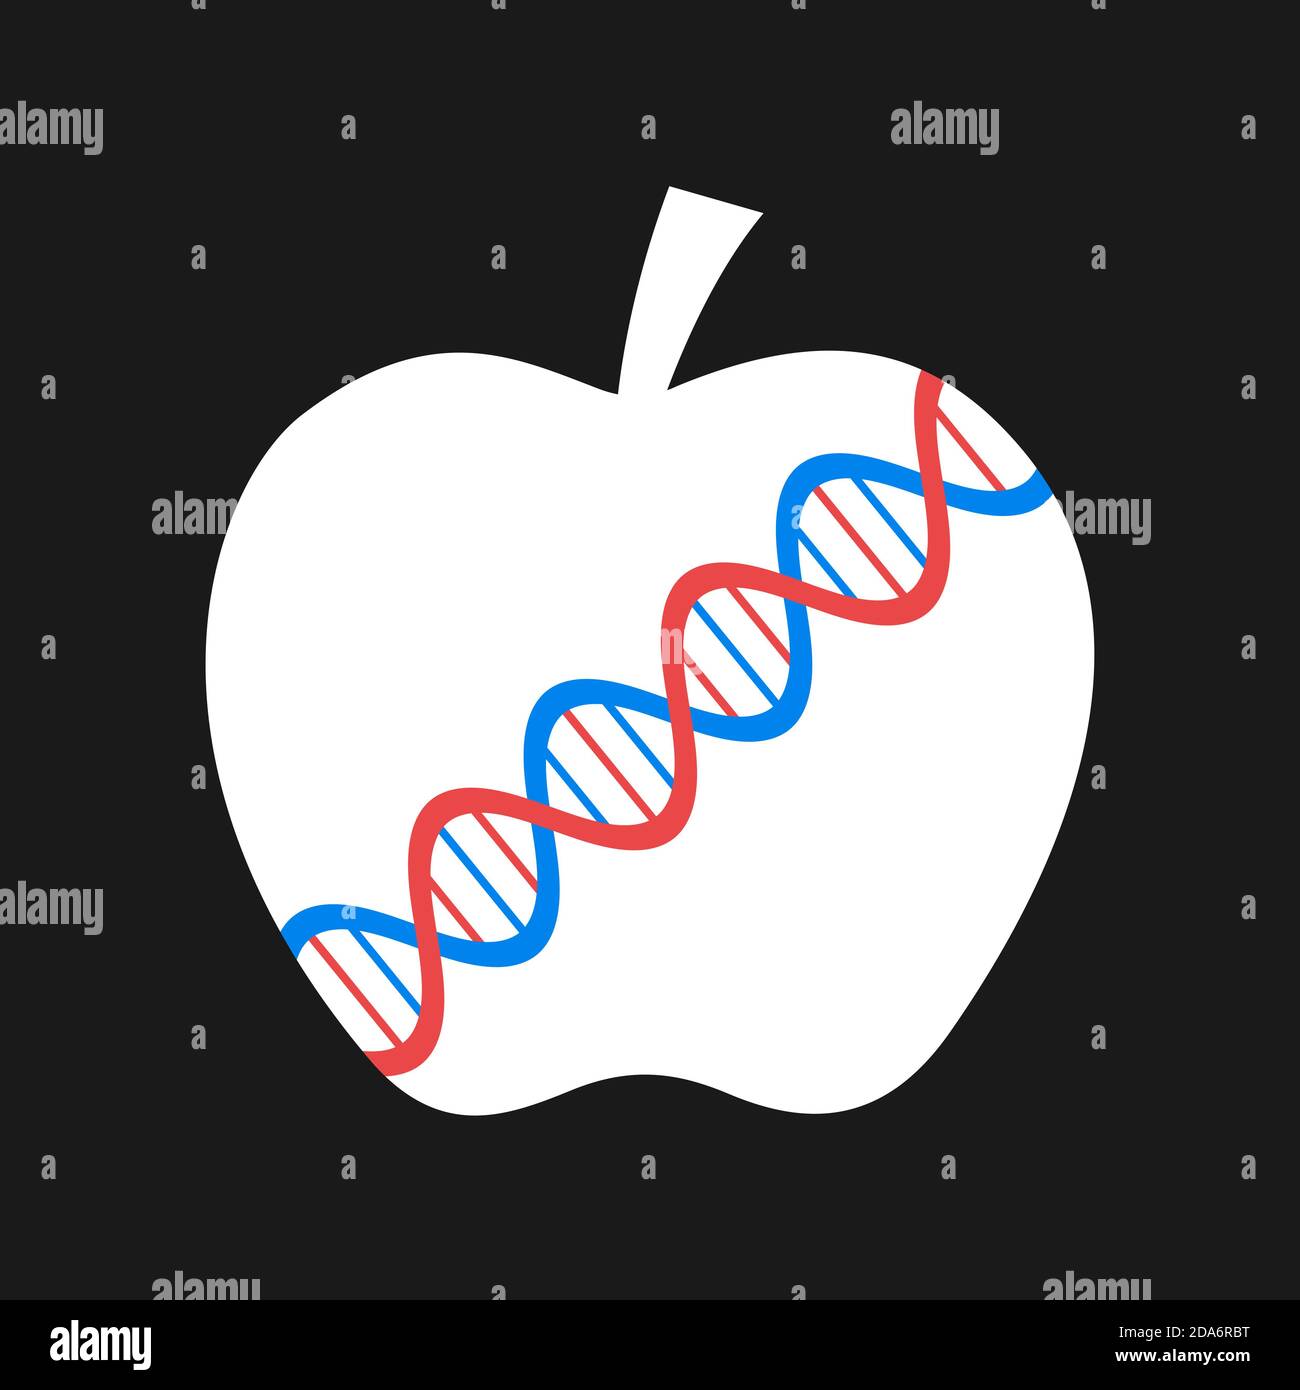 Genetisch veränderter Organismus und Nahrung - Obst und Apfel mit DNA-Doppelhelix. Vektorgrafik. Stockfoto